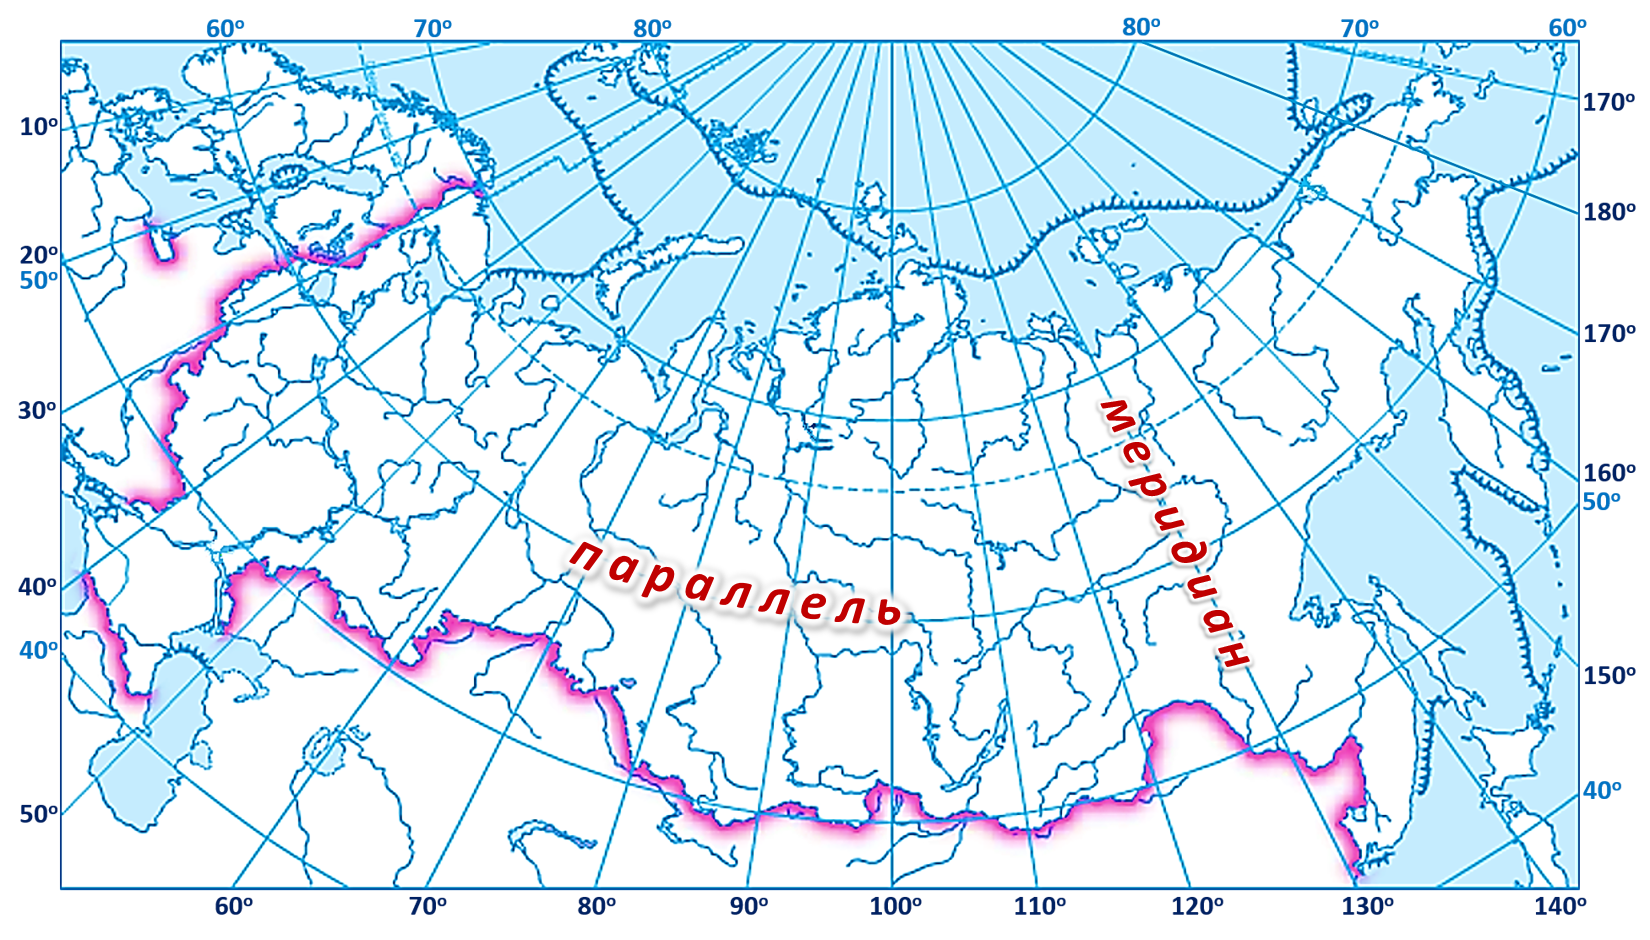 60 Параллель 60 Меридиан на карте. Карта России с градусной сетью. Карта России с широтой и долготой и городами. Широта 60 градусов на карте России.